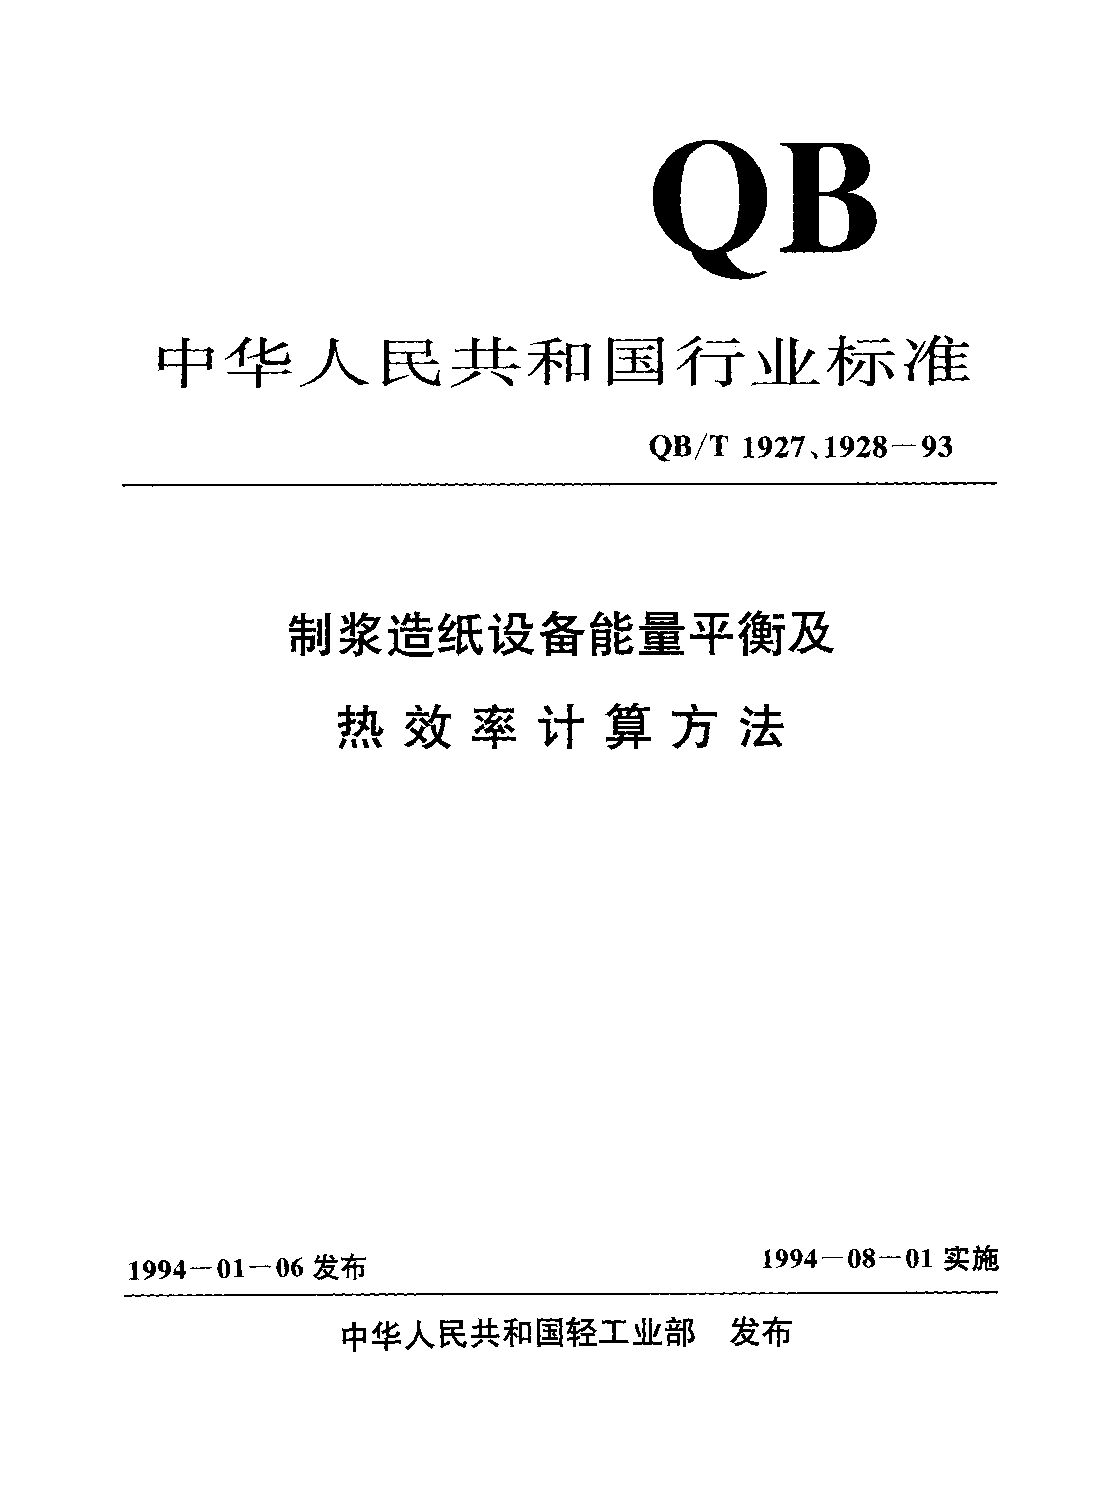 QB/T 1928-1993封面图